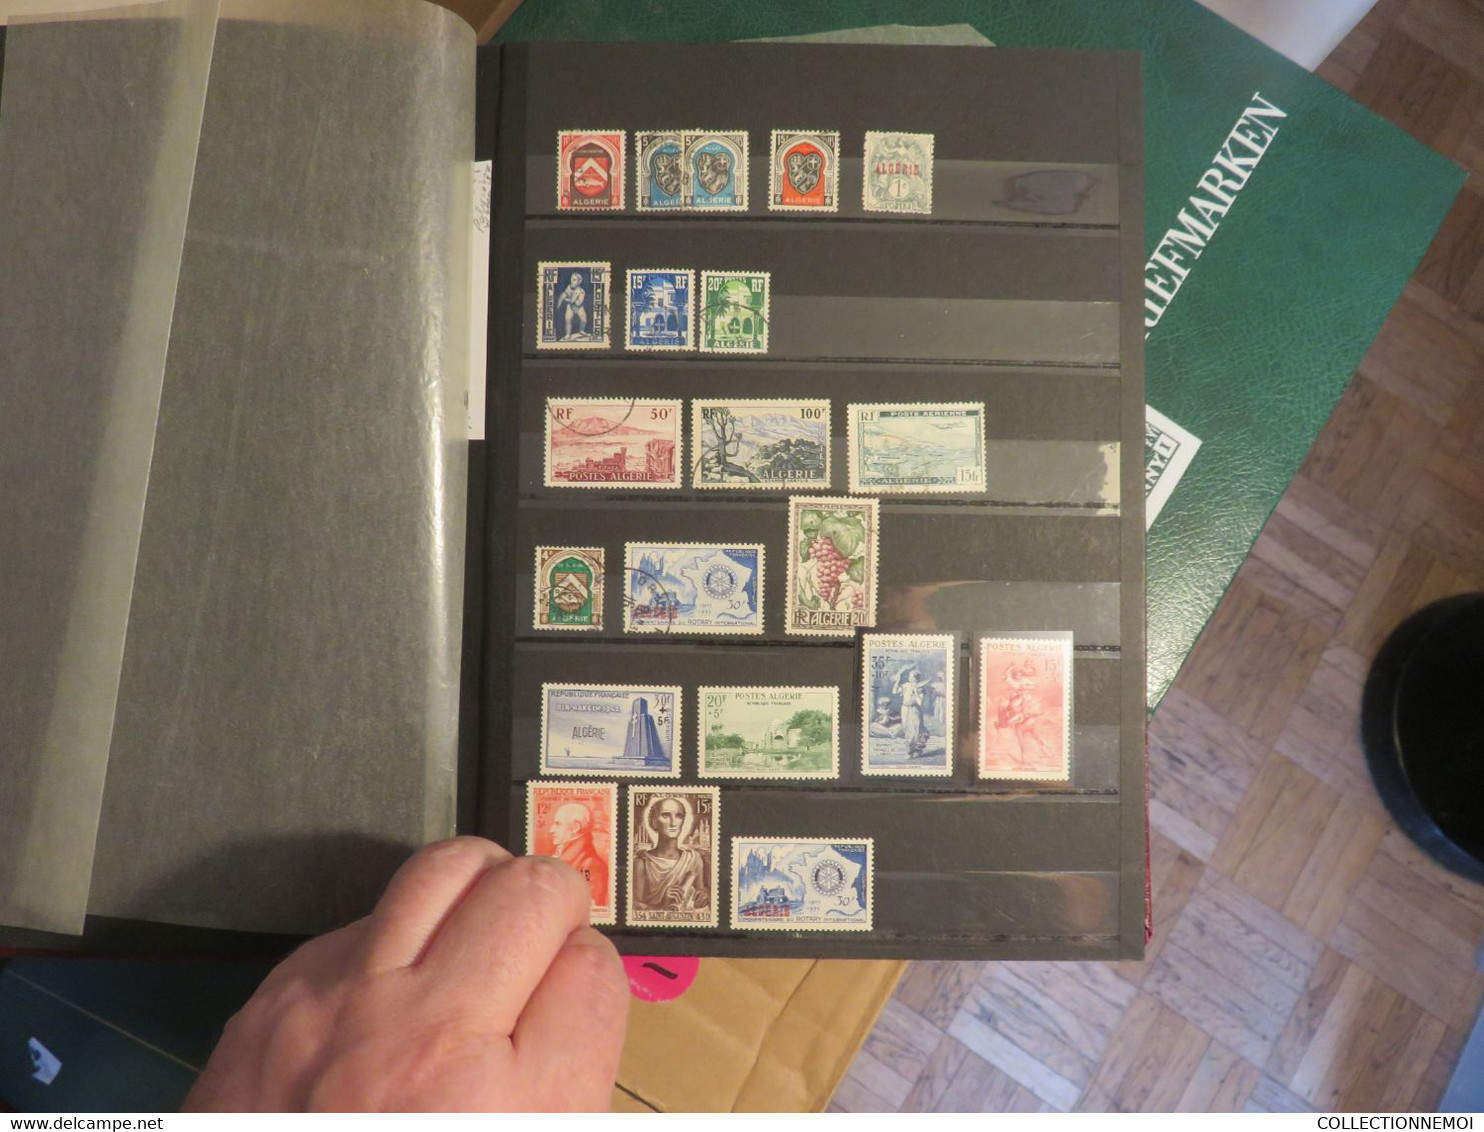 1 VRAC de timbres de moins de 30 kilos ,,, en une quinzaine de classeurs et divers en vrac ,,LIRE DESCRIPTION